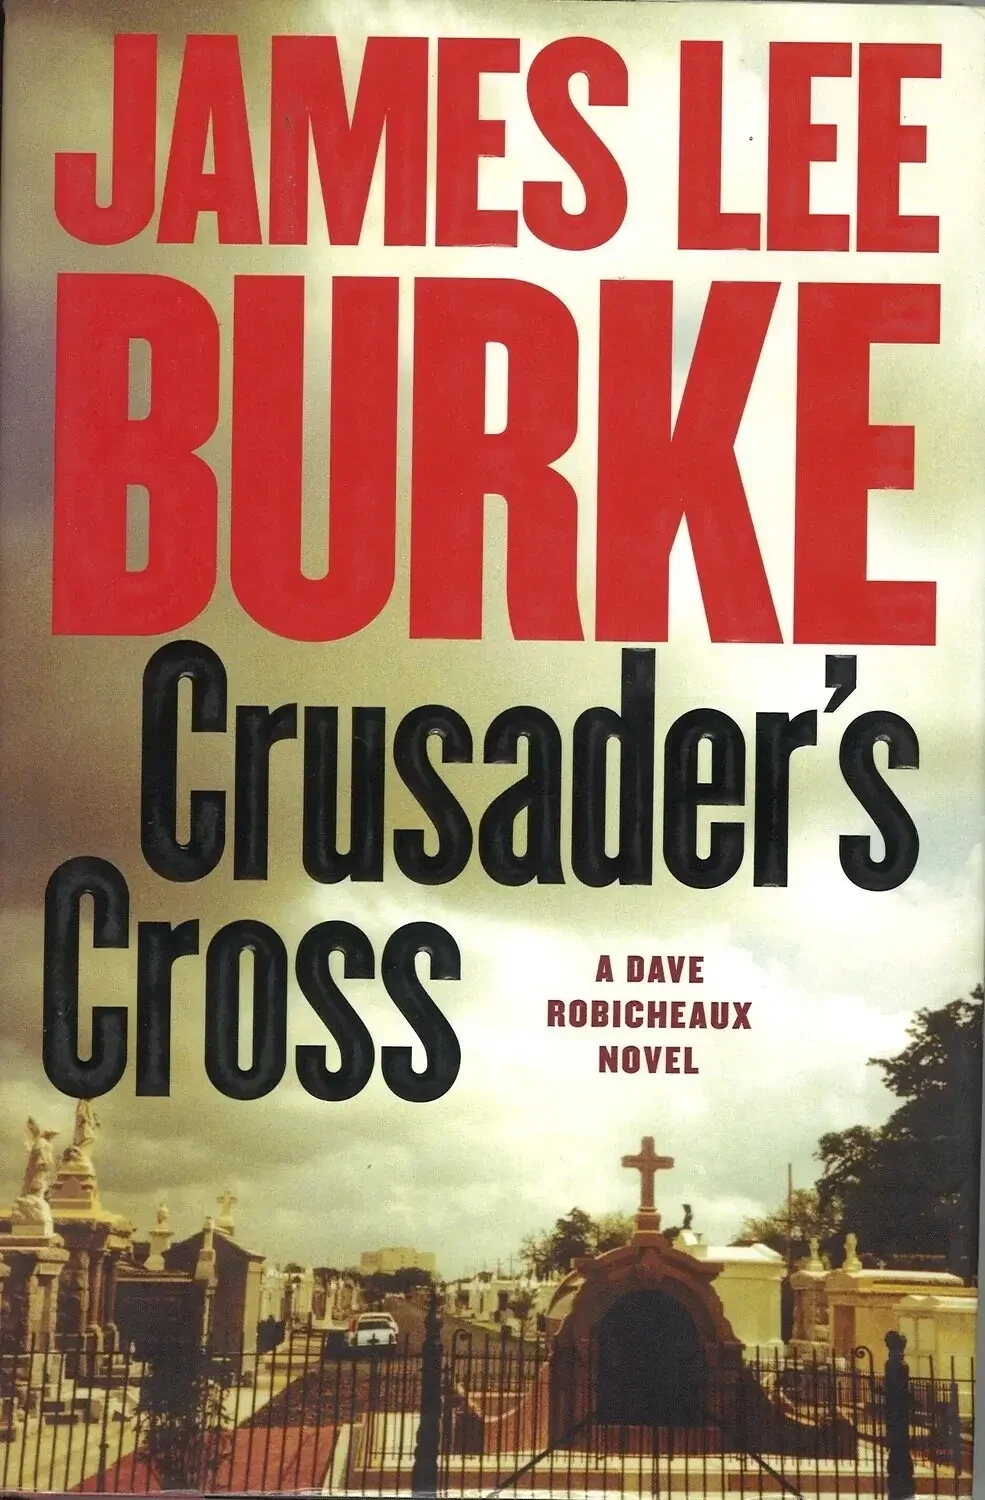 Crusader's Cross, James Lee Burke